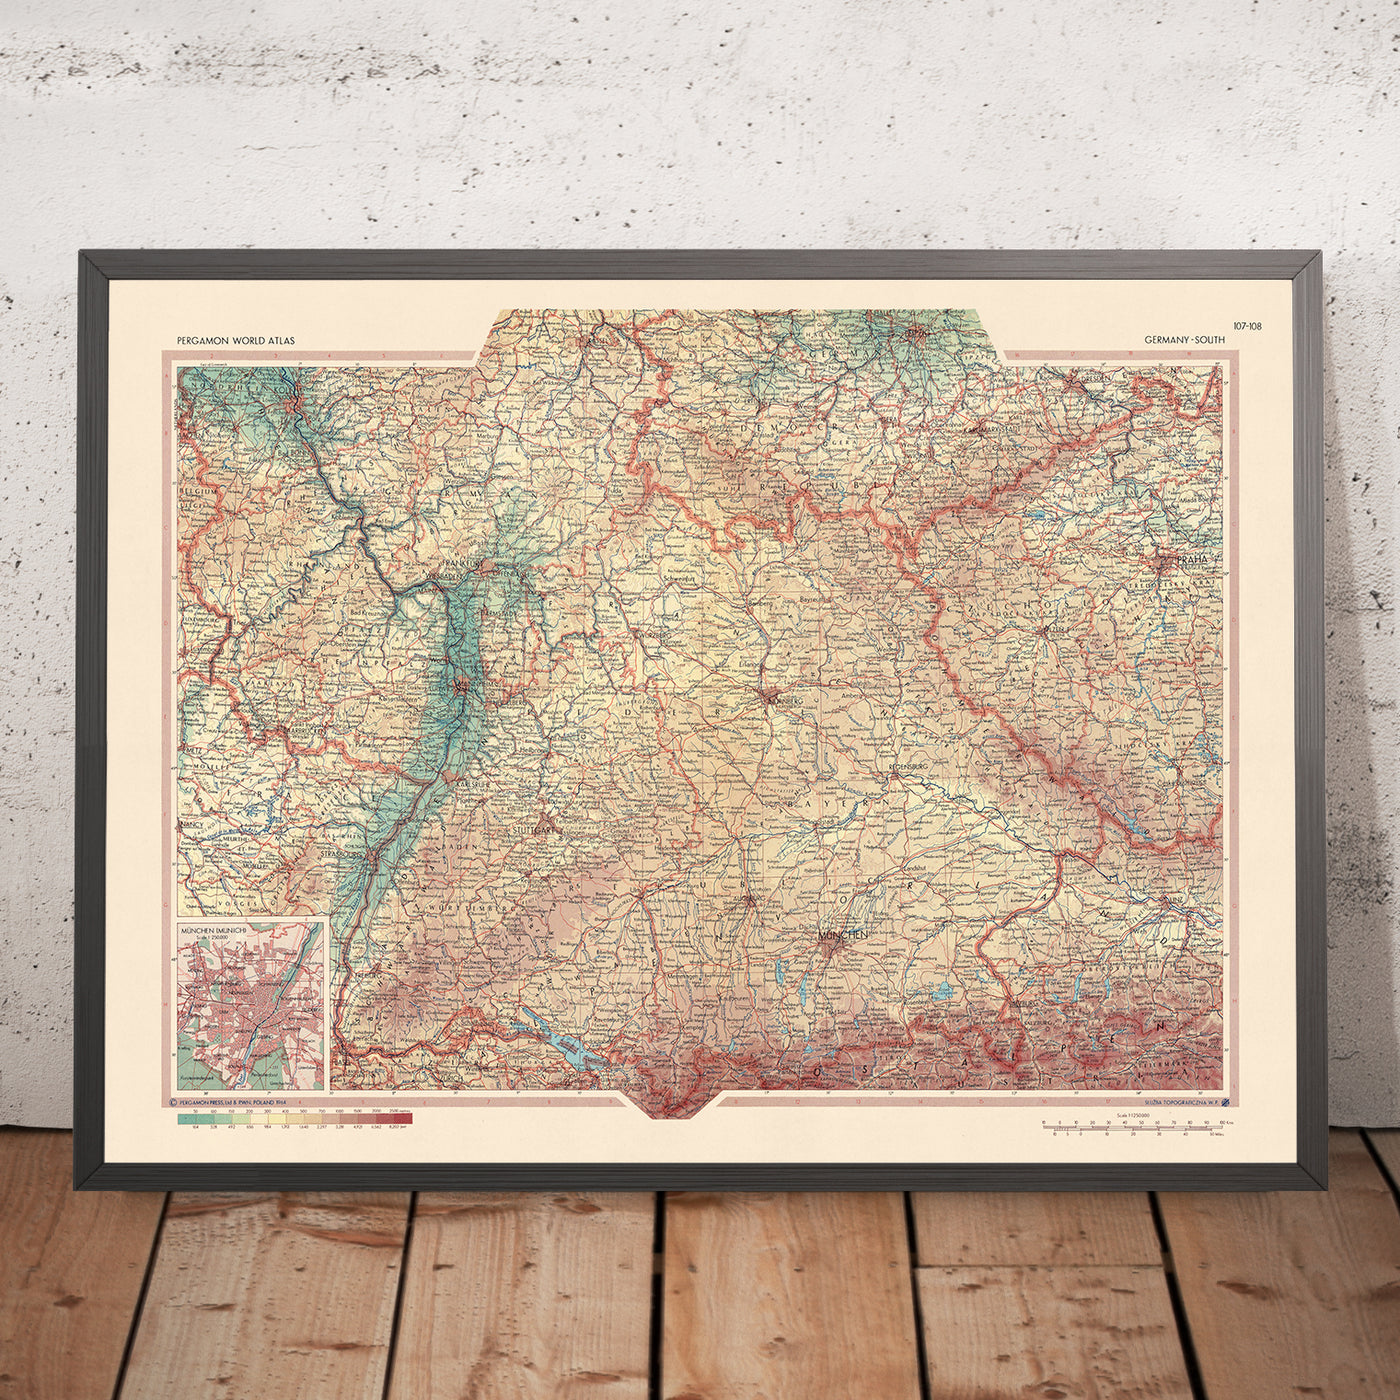 Ancienne carte du sud de l'Allemagne établie par le service topographique de l'armée polonaise, 1967 : Rhénanie-Palatinat, Bade-Wurtemberg, Thuringe, Hesse, Bavière